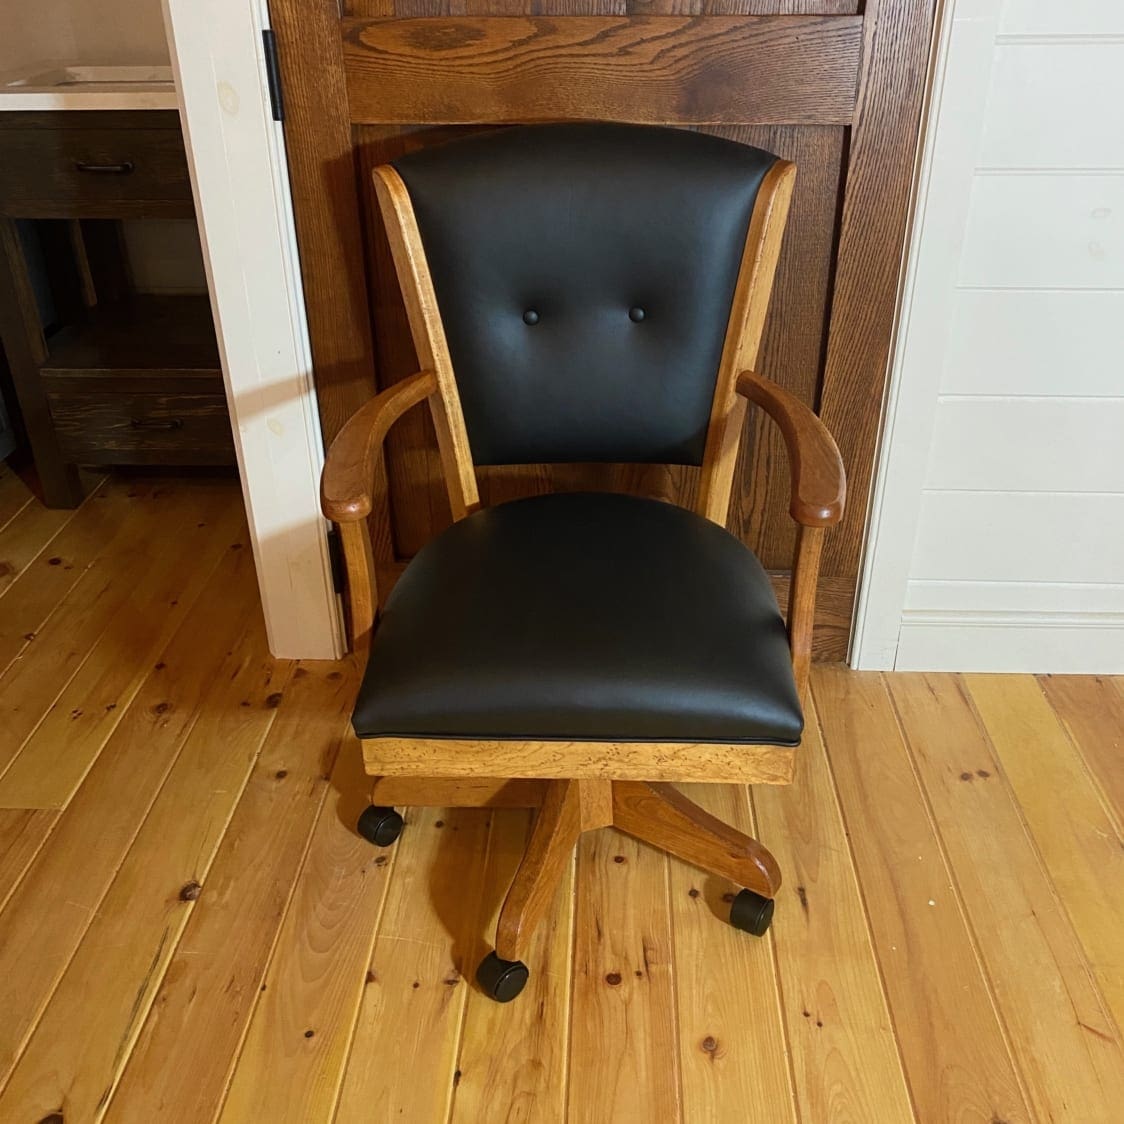 Landsfield Desk Chair